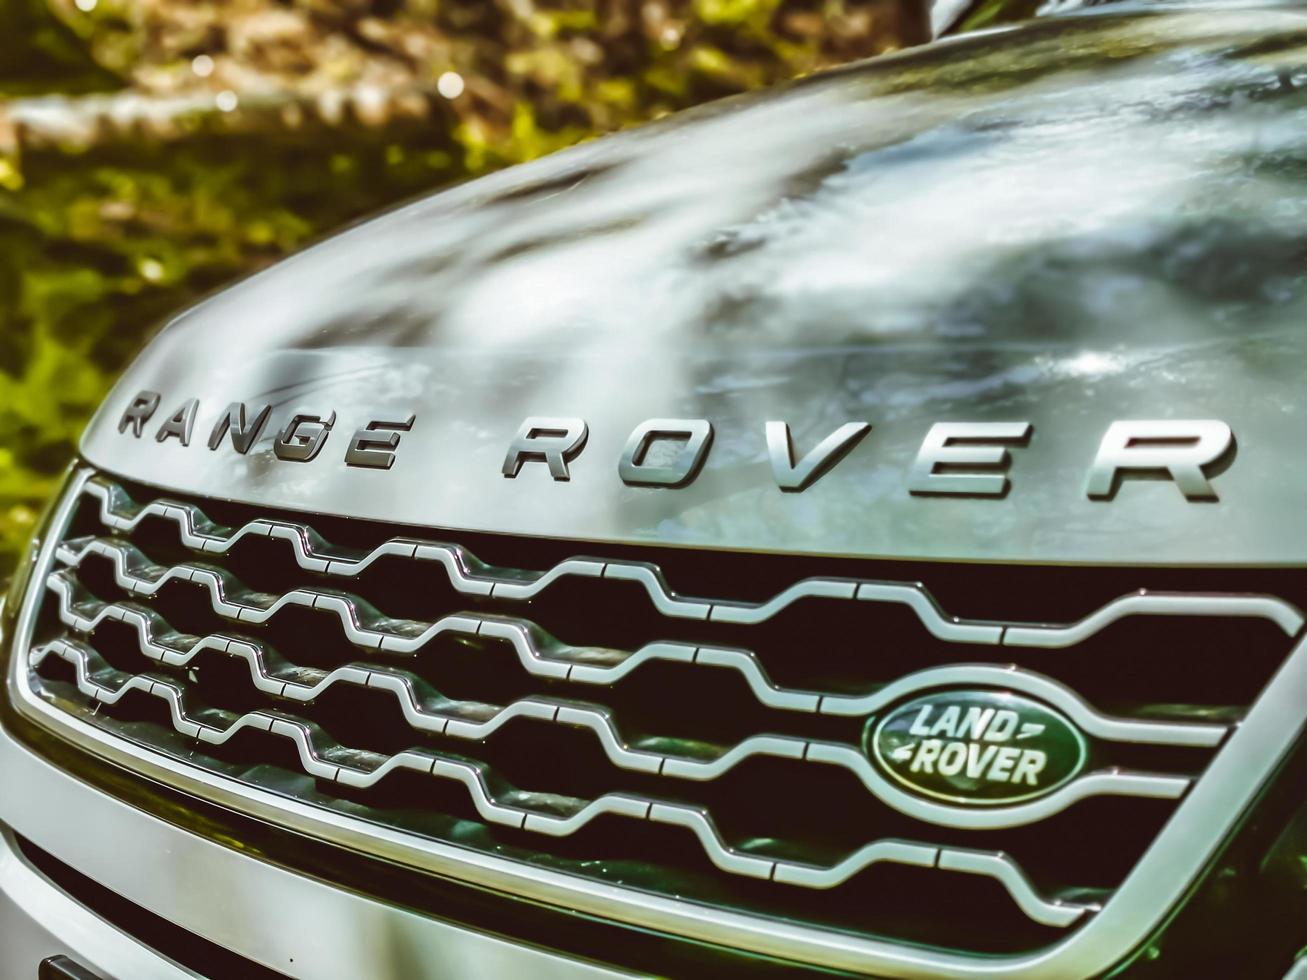 mallorca, espanha, 2020 - close-up do logotipo de um range rover foto